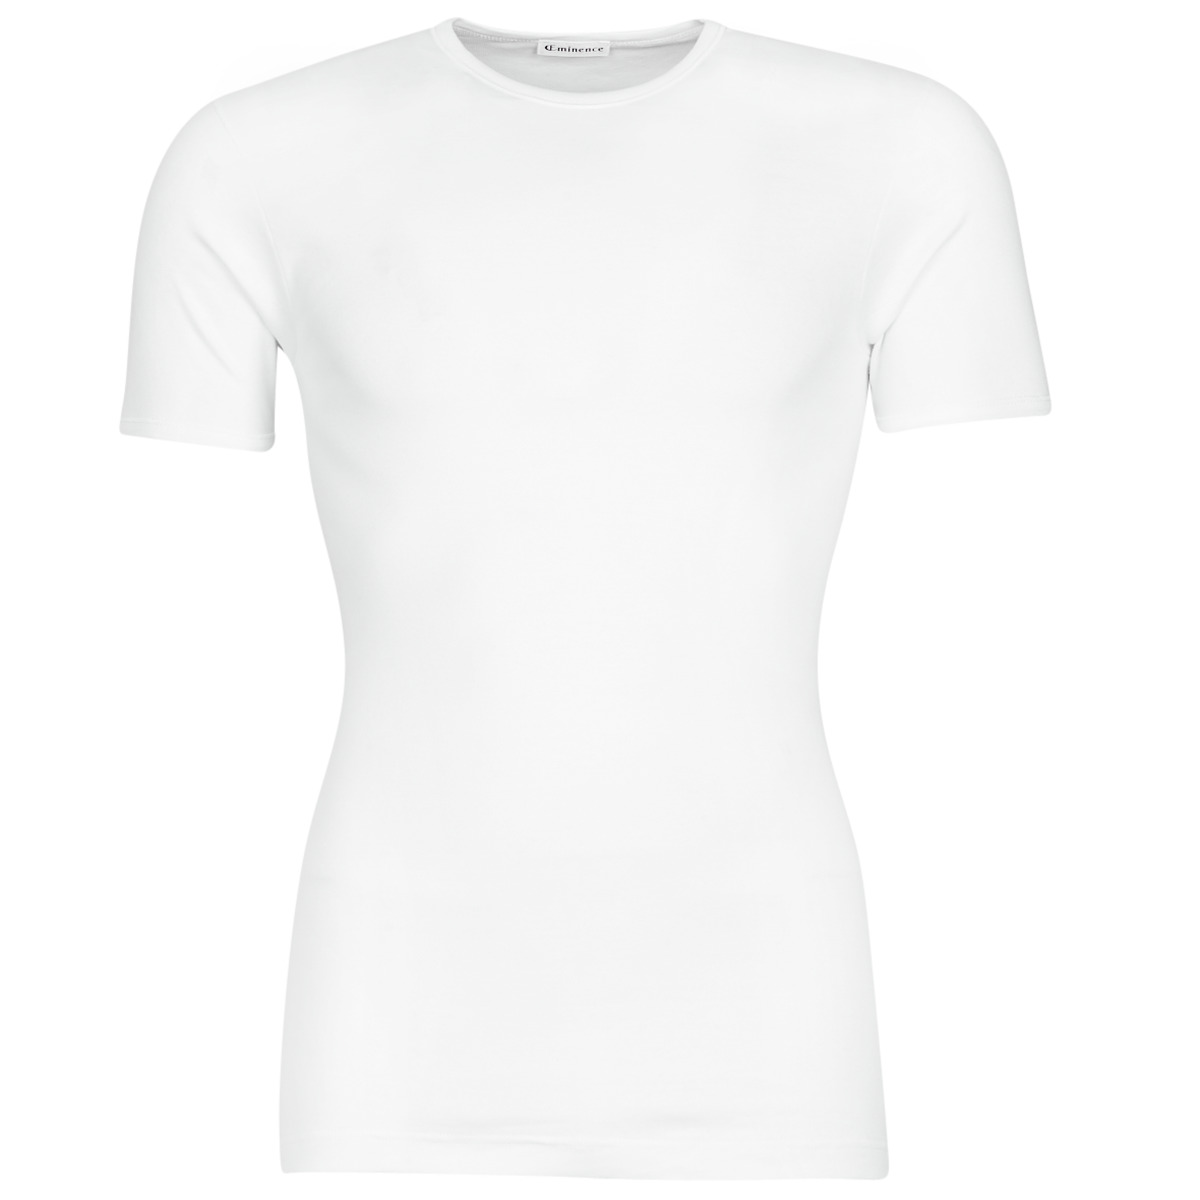 Textil Homem T-Shirt mangas curtas Eminence 308-0001 Branco